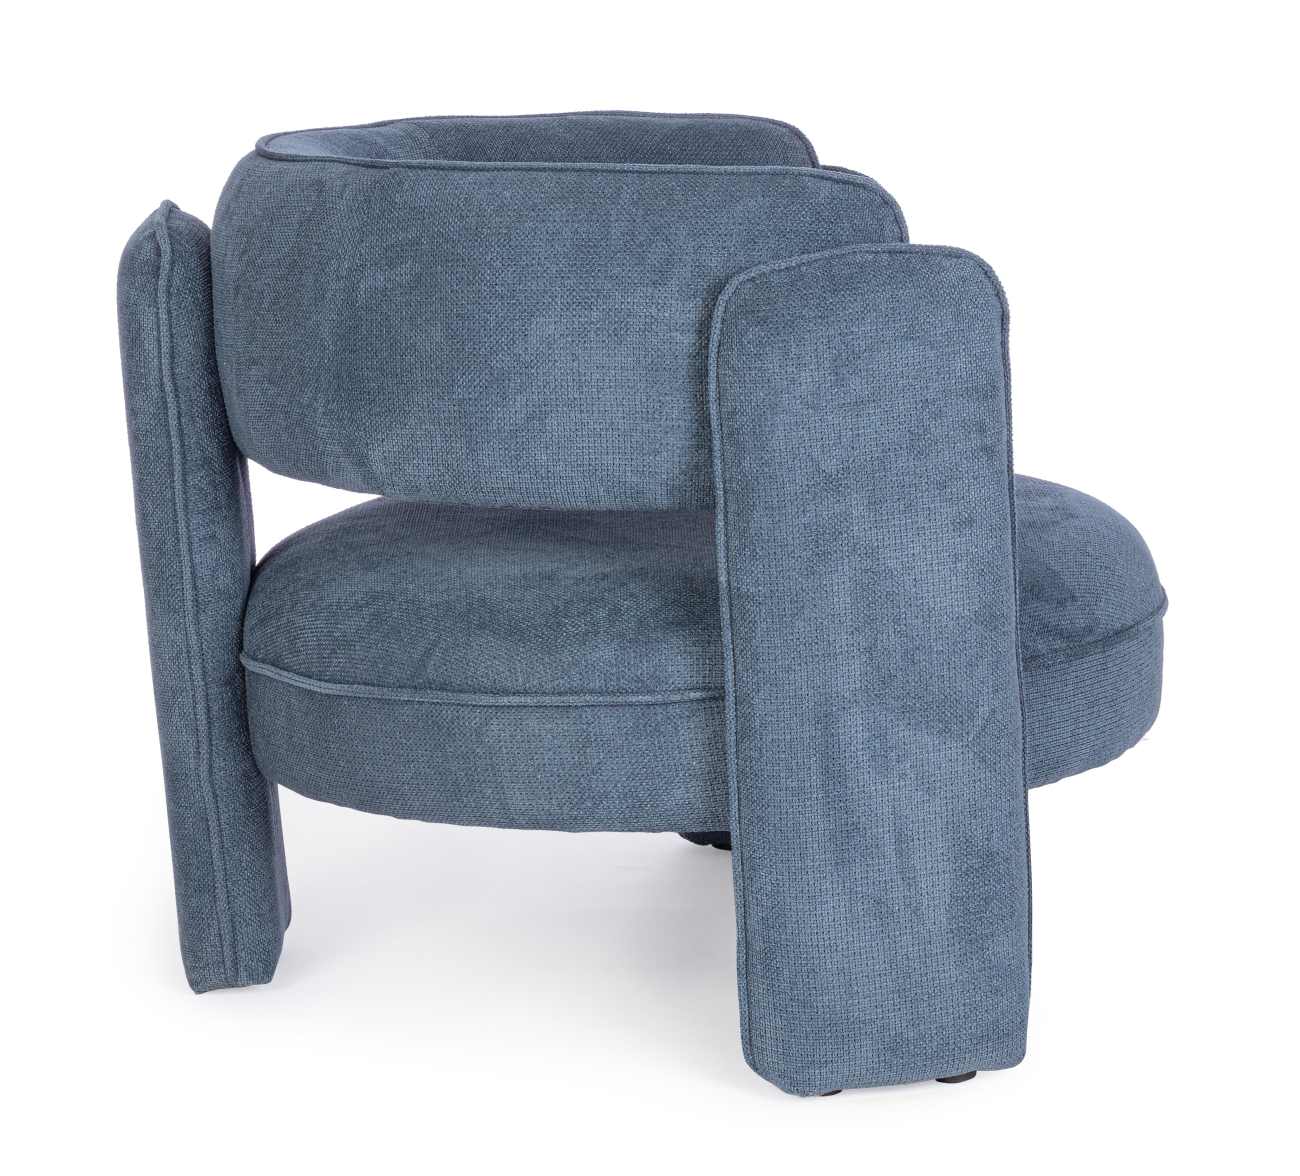 Der Sessel Aisha überzeugt mit seinem modernen Stil. Gefertigt wurde er aus Stoff, welcher einen blauen Farbton besitzt. Der Sessel besitzt eine Sitzhöhe von 44 cm.